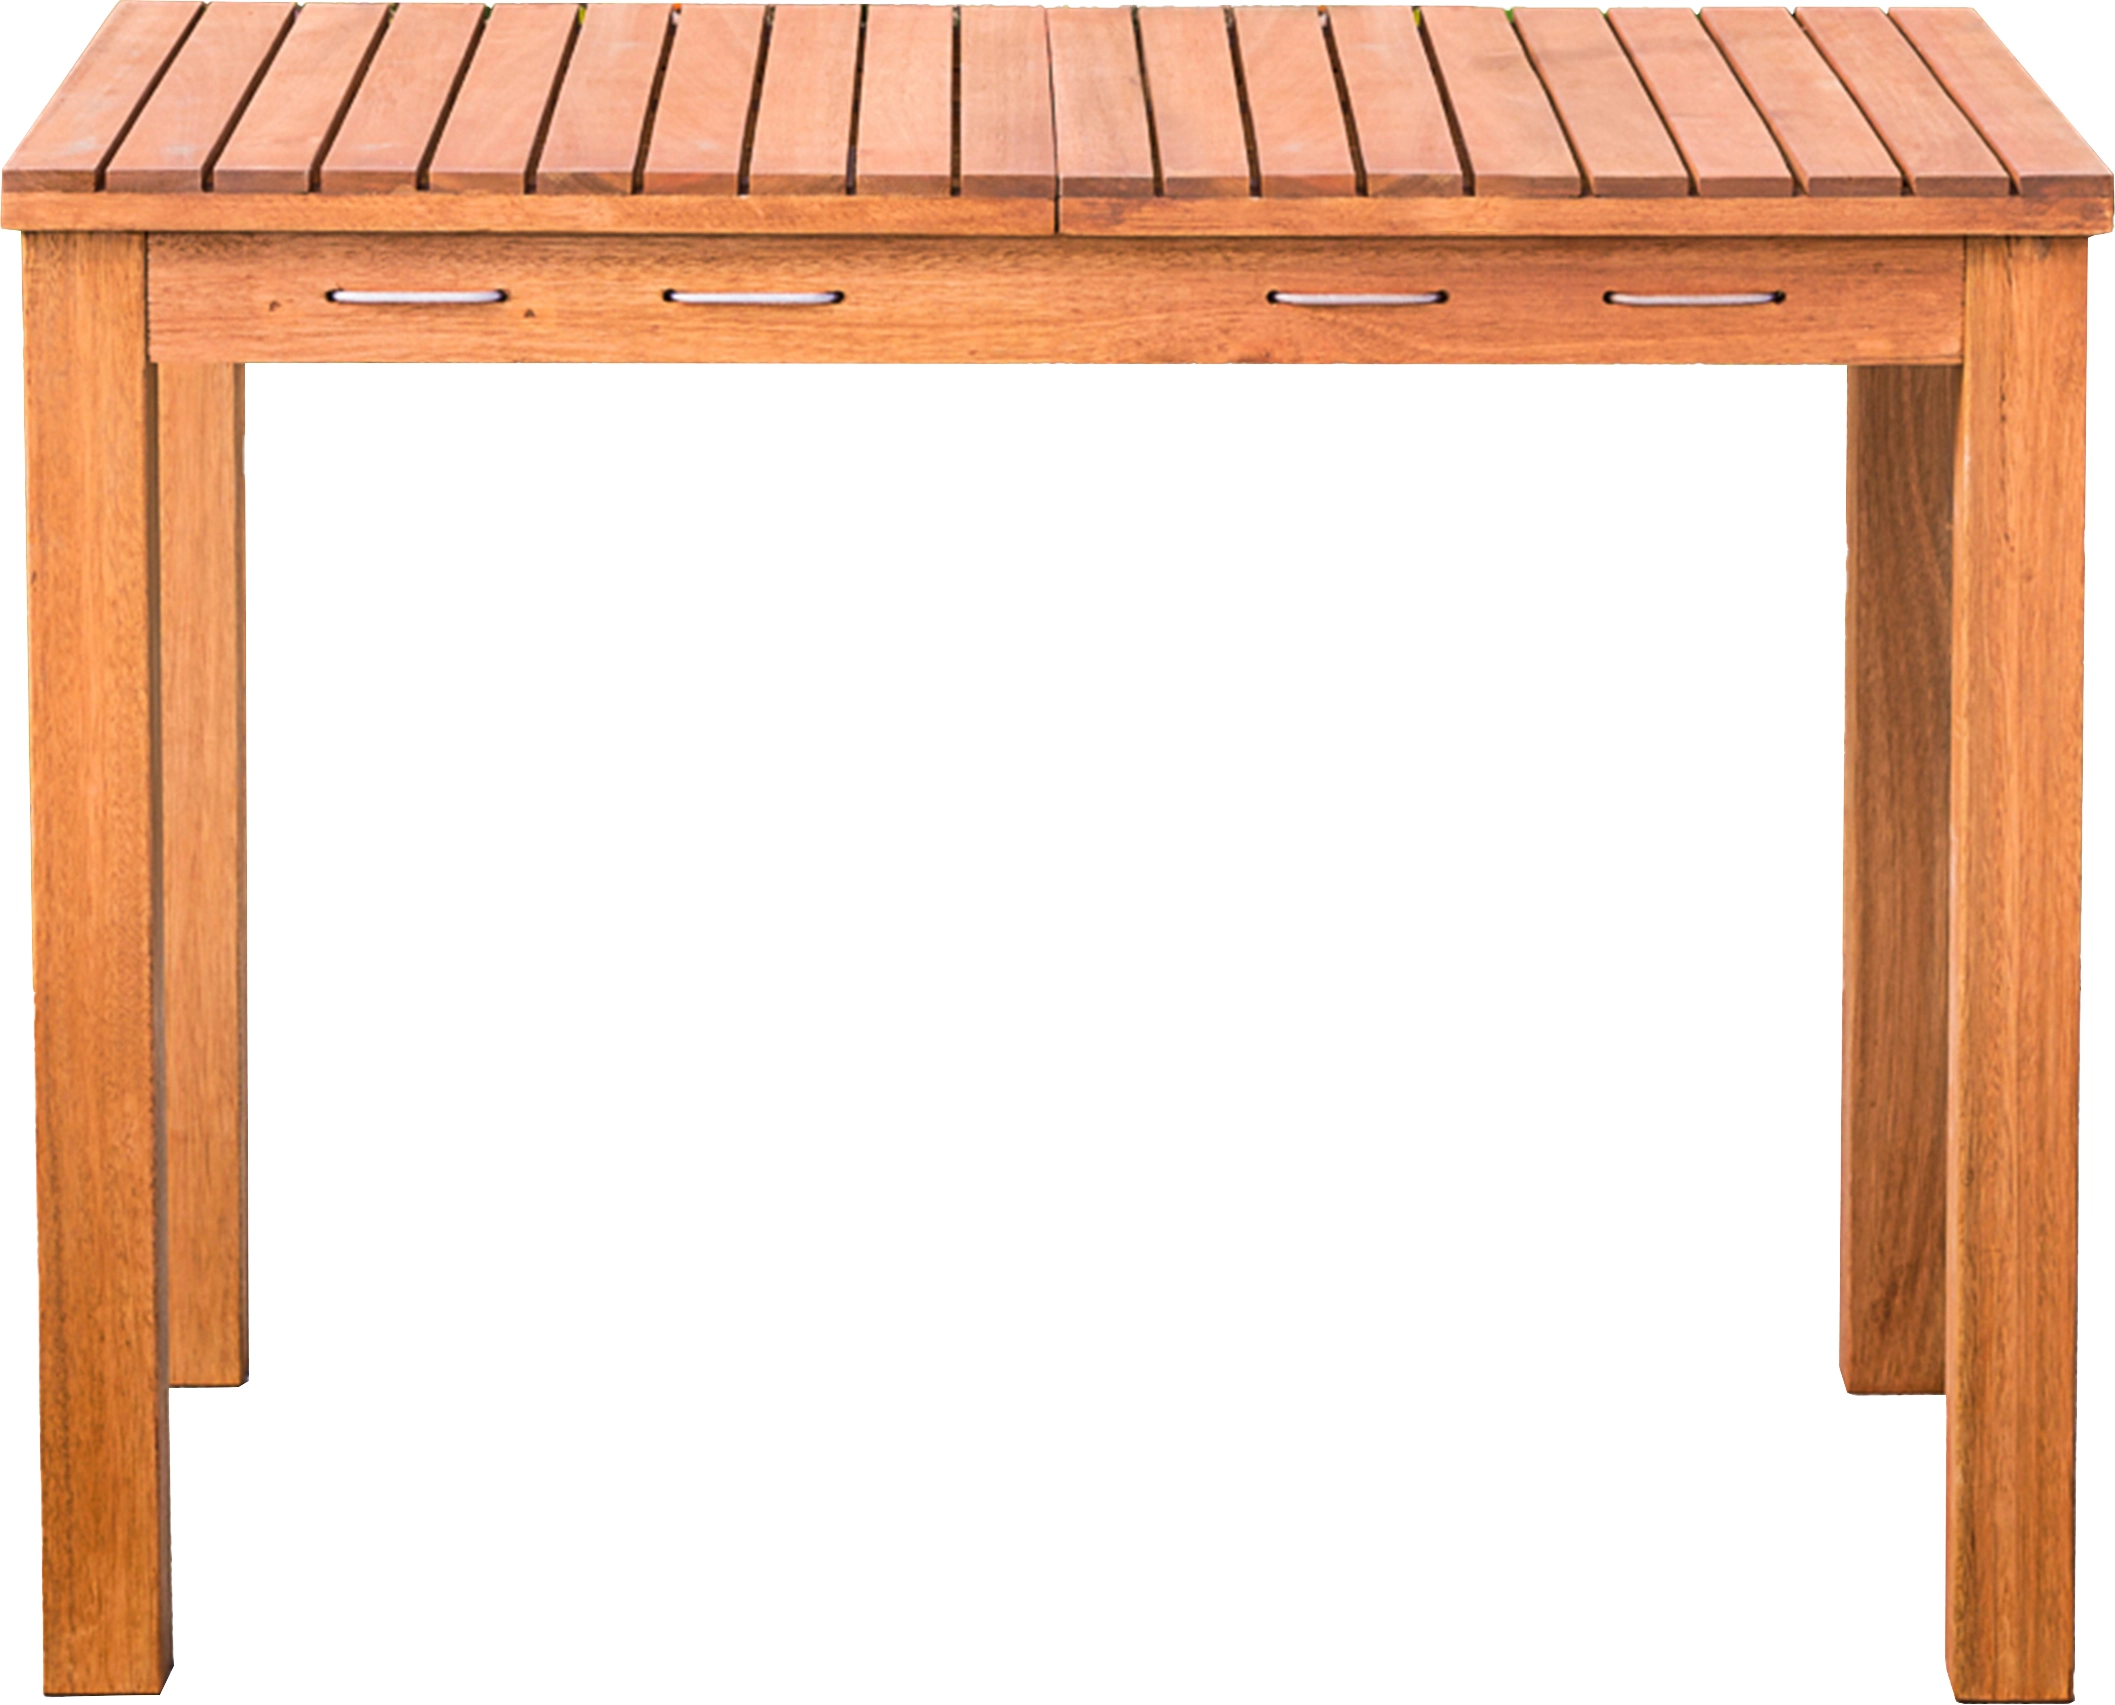 Merxx Gartentisch Rechteckig Braun FSC® Holz 100 cm x 60 cm